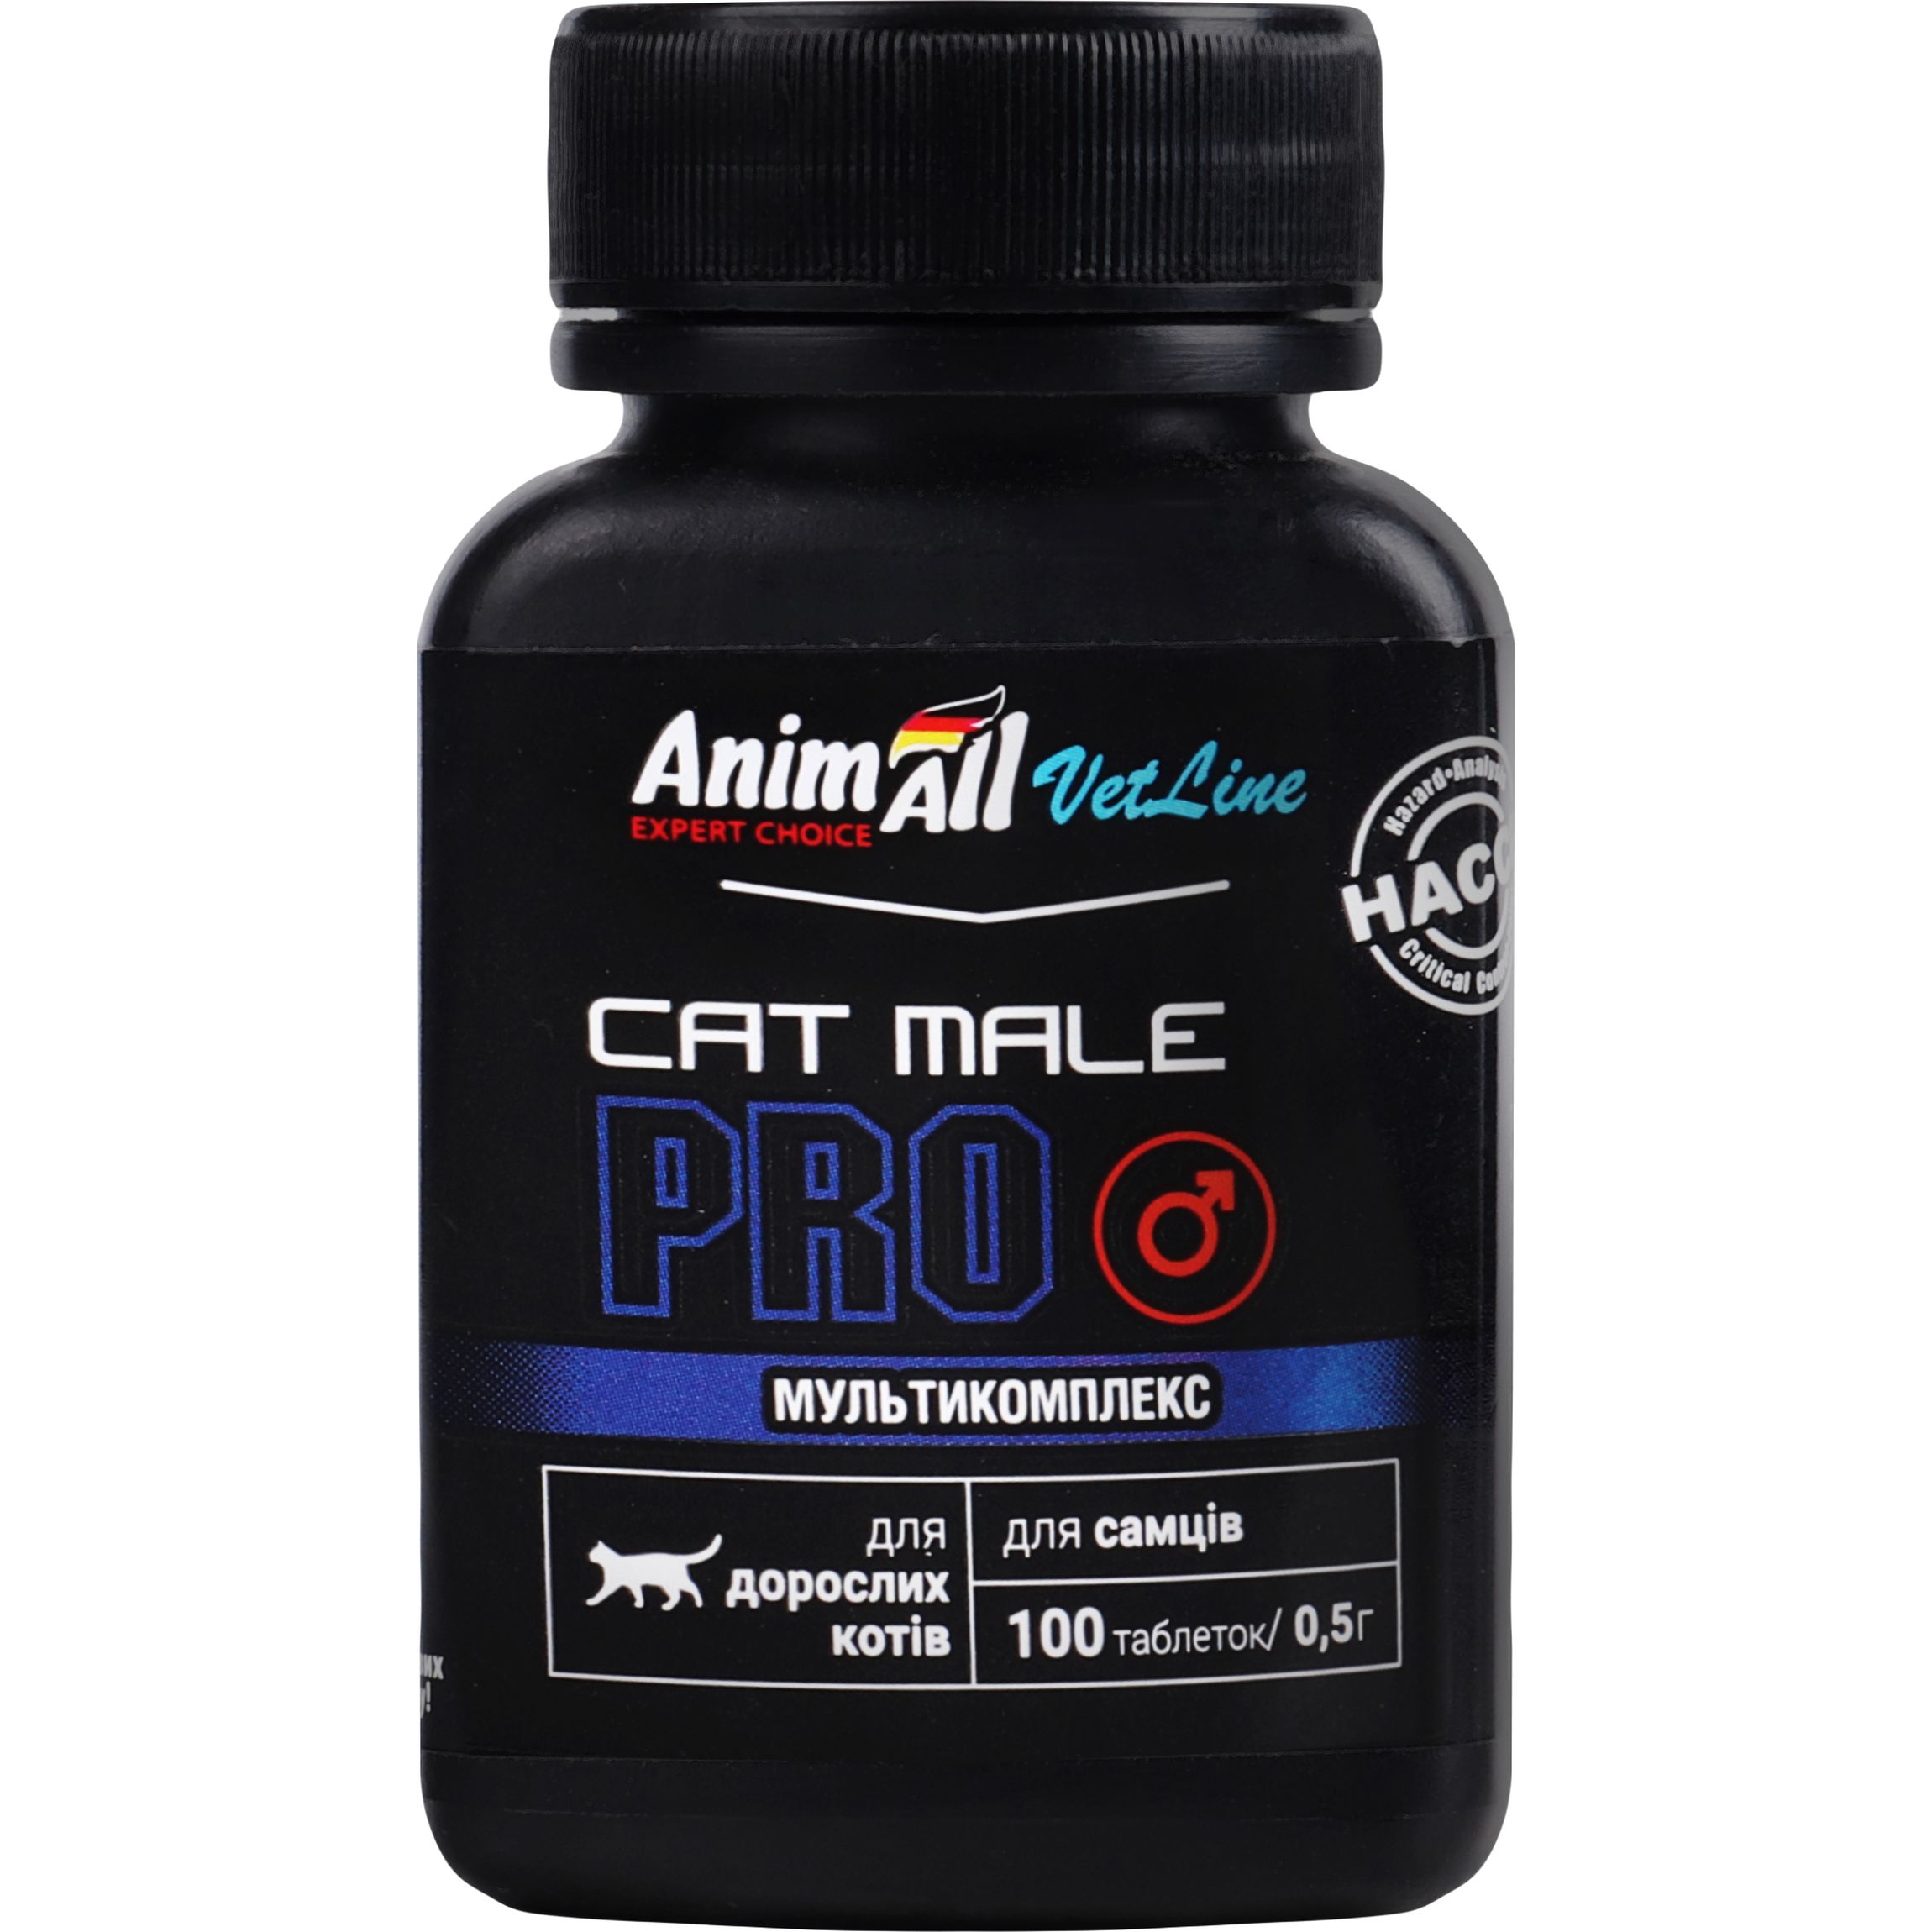 Вітамінна добавка AnimAll VetLine Cat Male PRO для дорослих котів 100 таблеток - фото 1